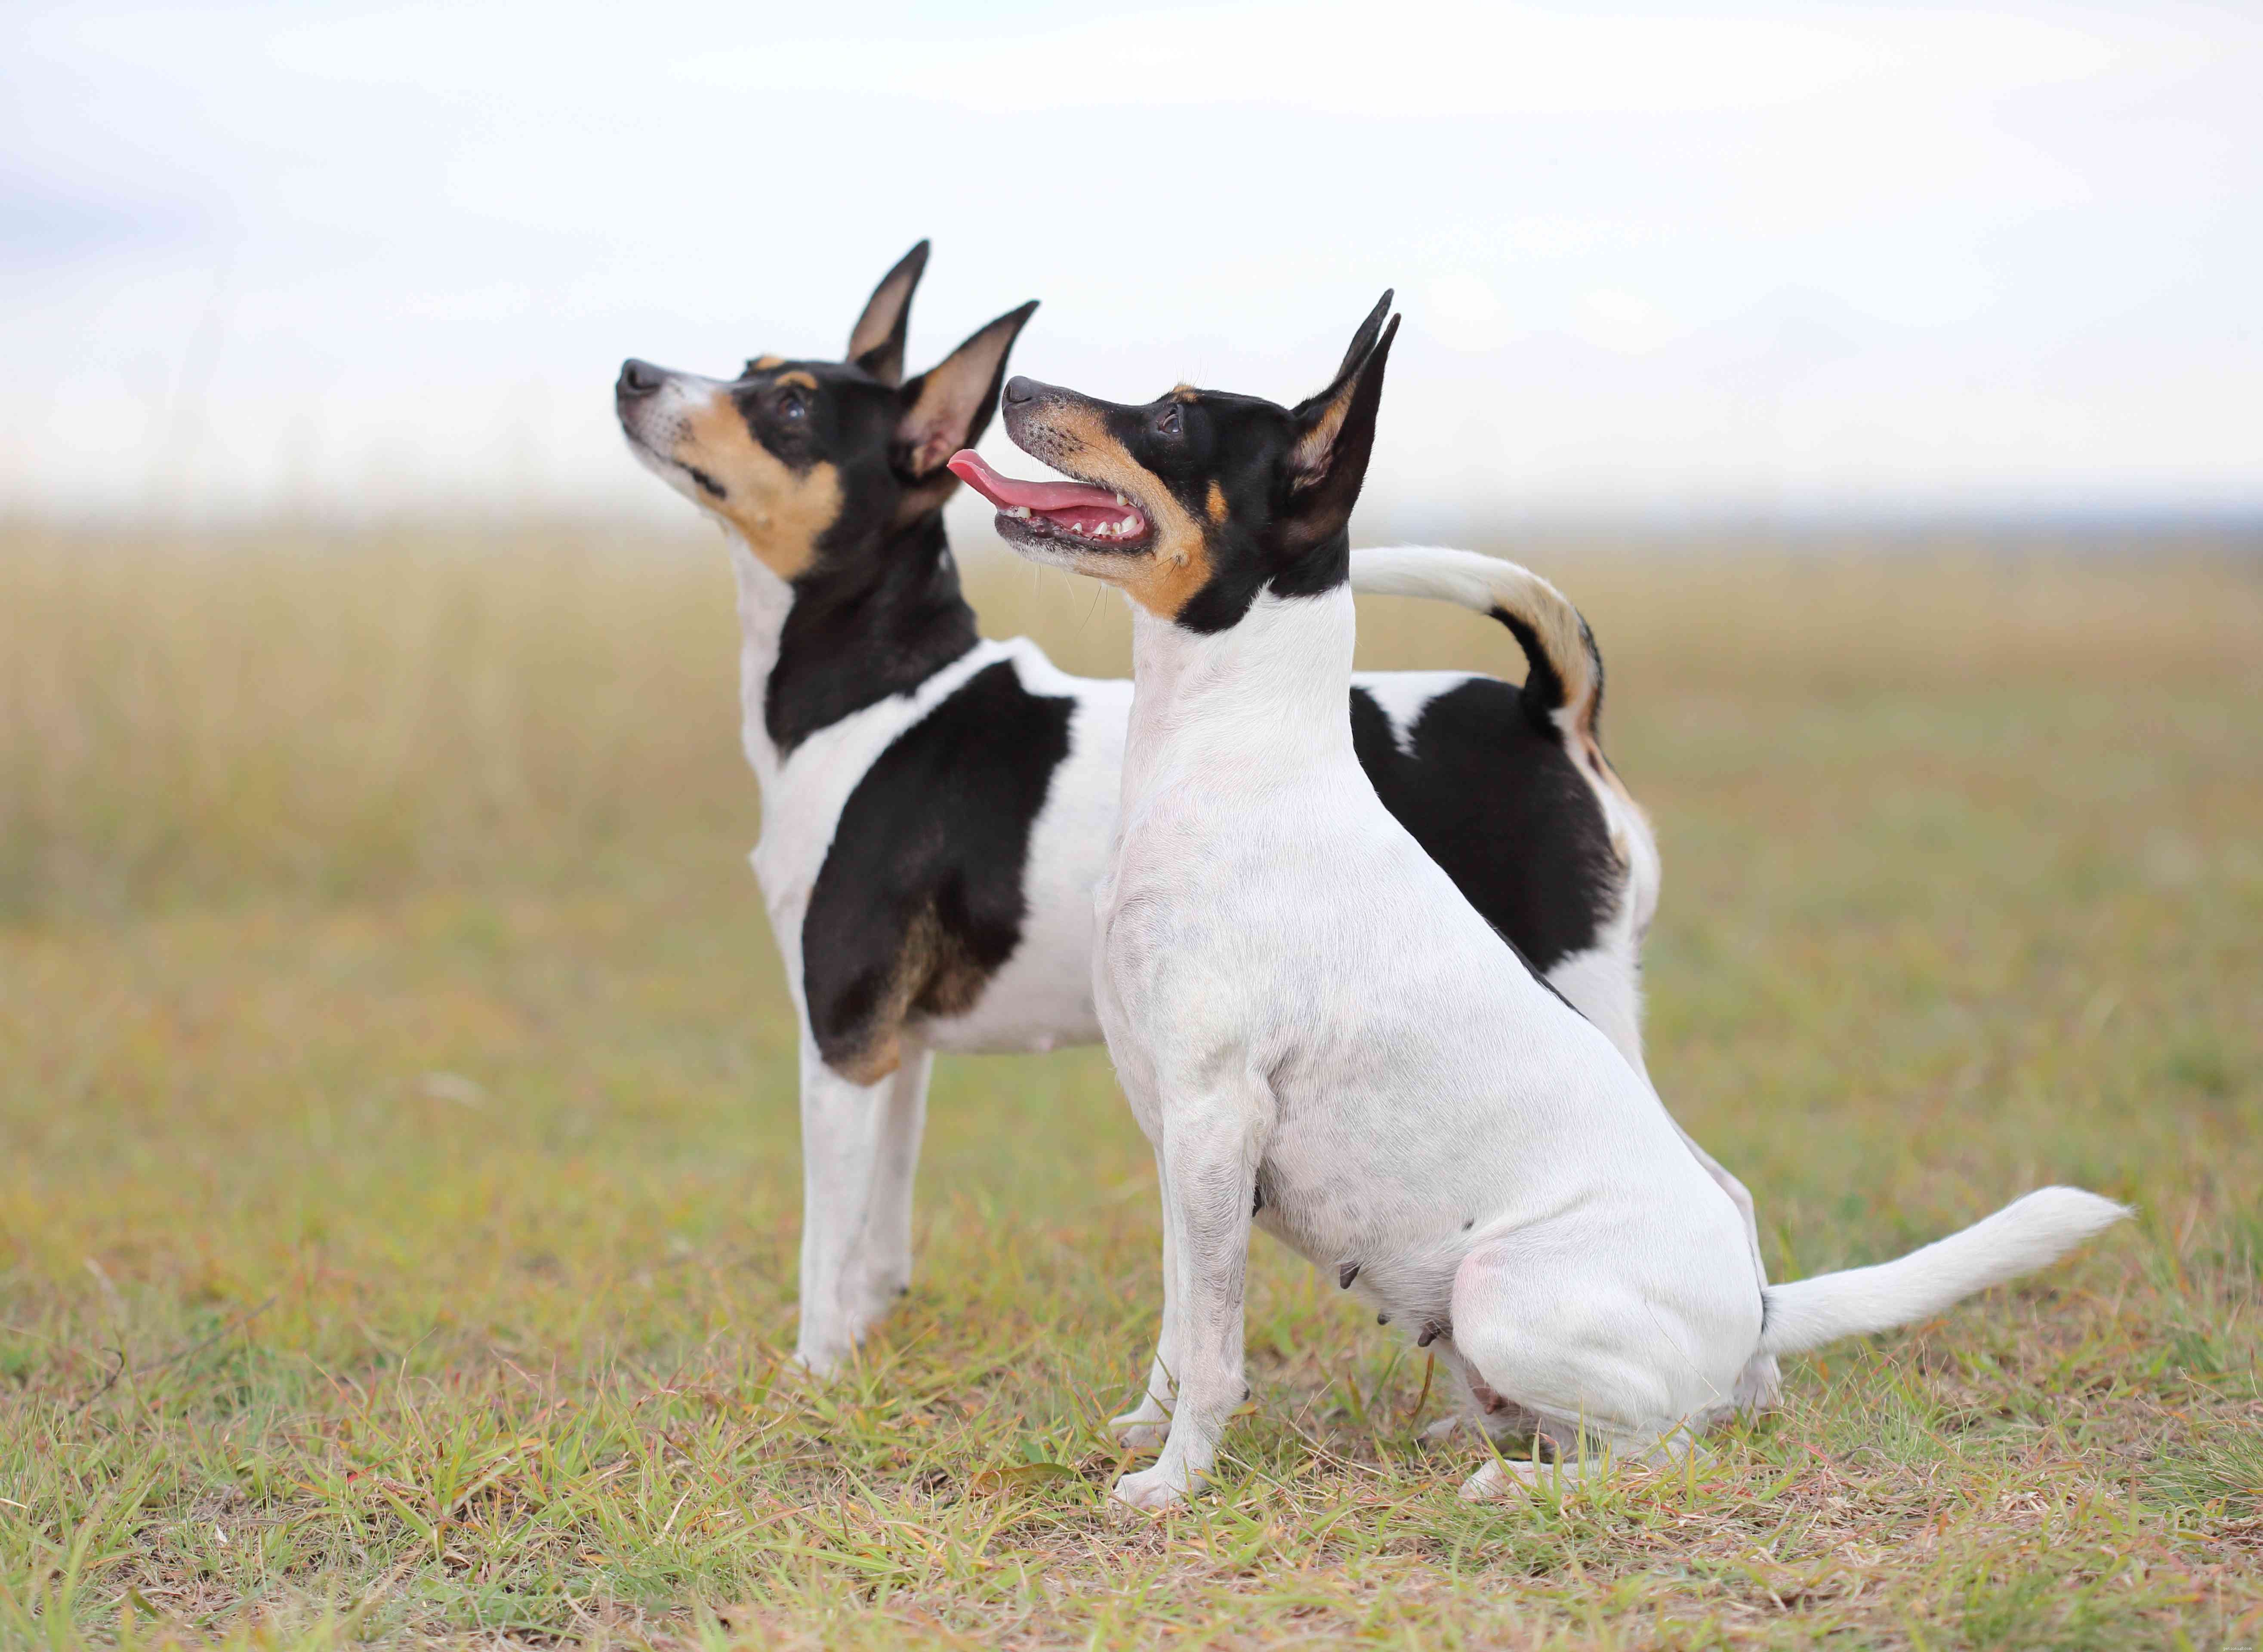 9 raças de cães australianos para aficionados